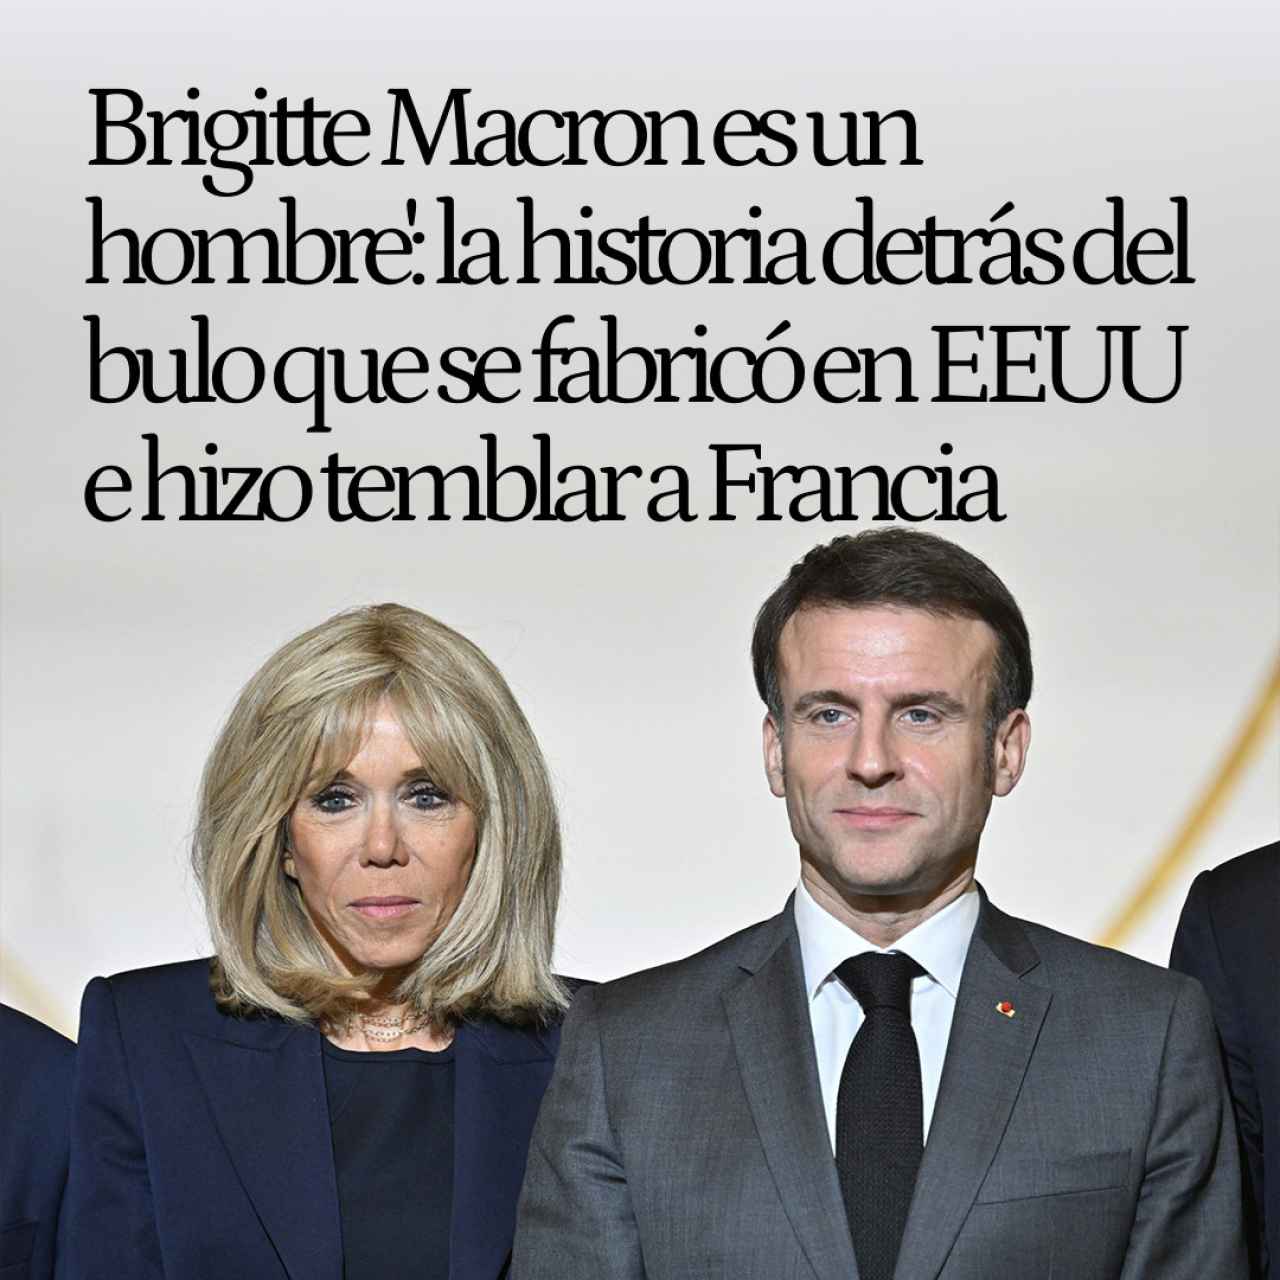 'Brigitte Macron es un hombre': la historia detrás del bulo que hace temblar los pilares de la política francesa desde EEUU